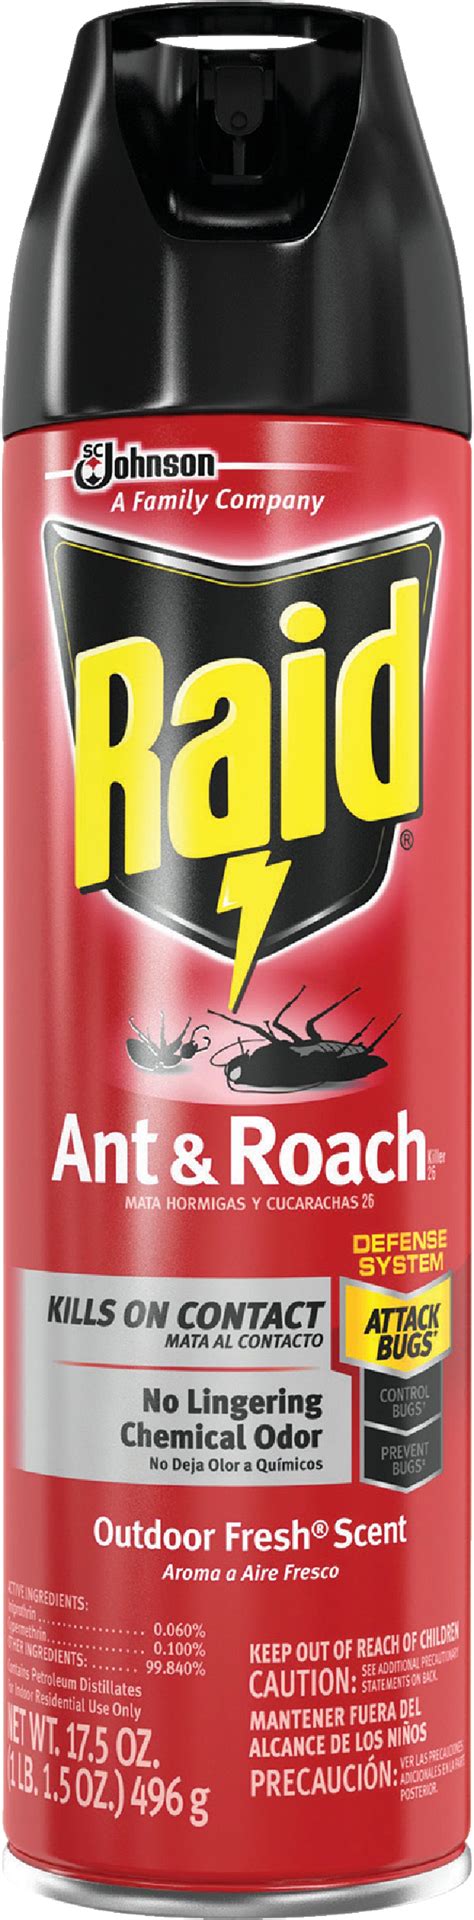 buy raid ant roach killer  oz aerosol spray